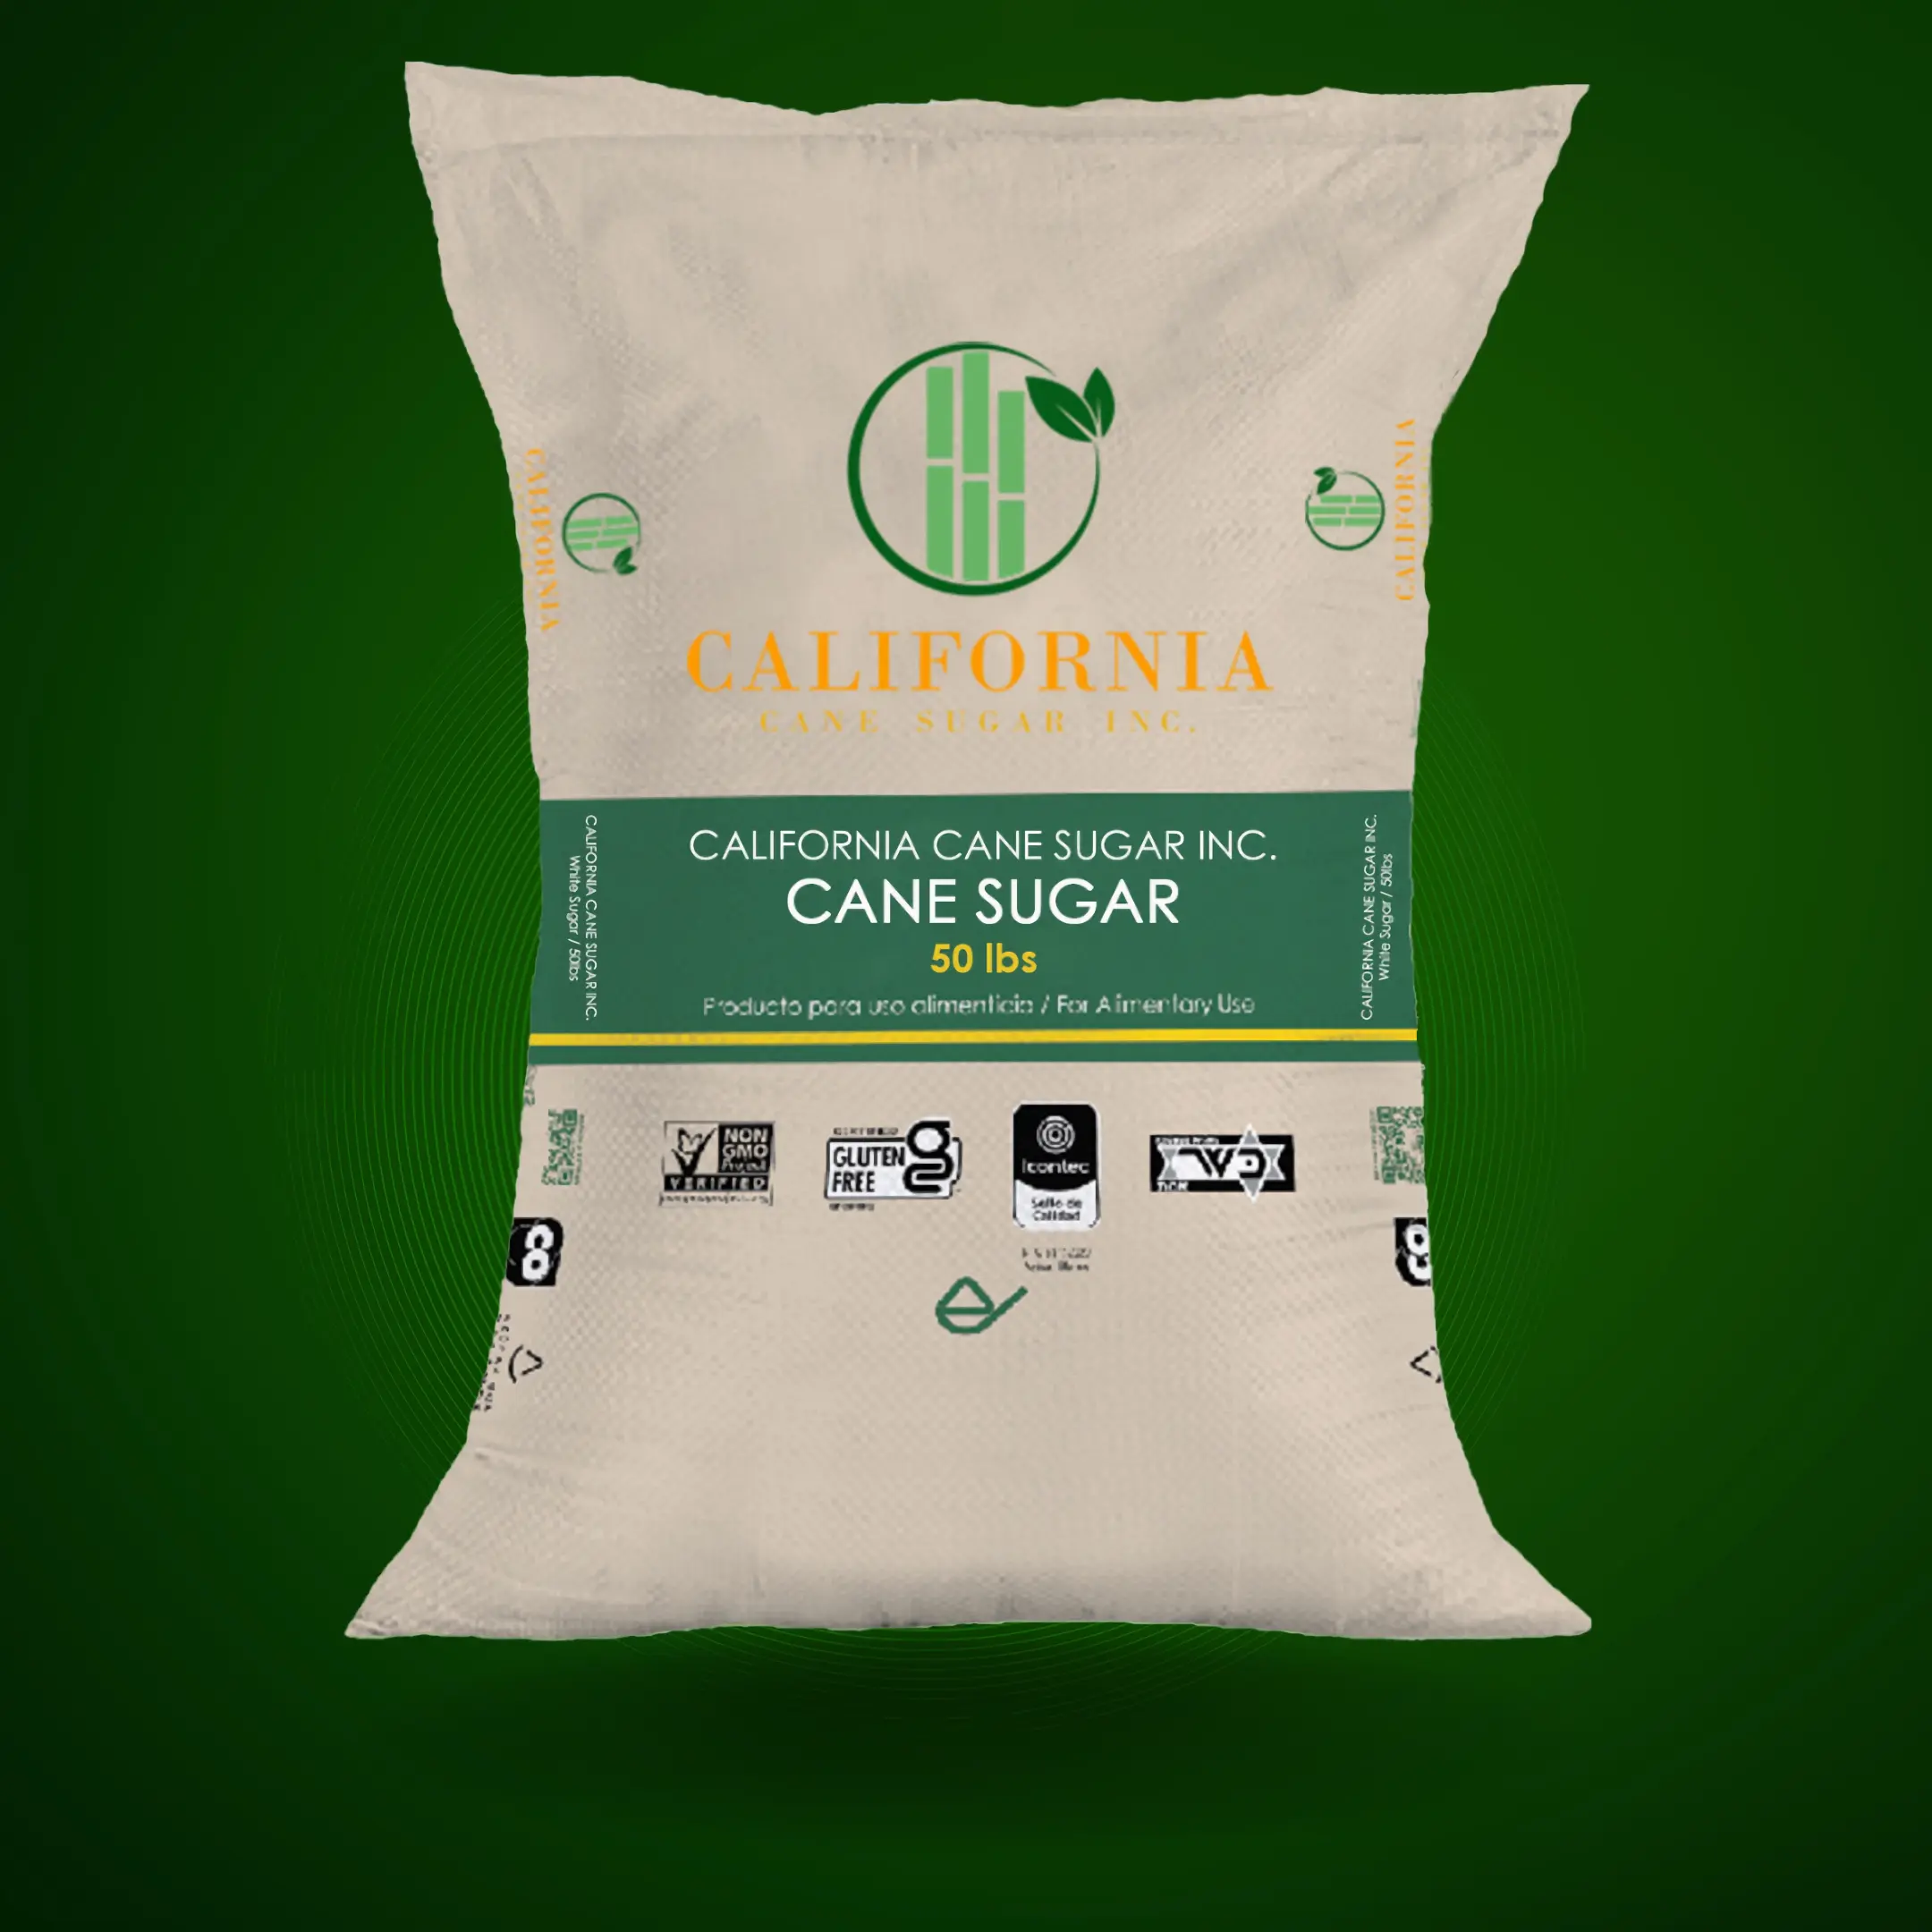 california-cane-sugar-inc-brown-sugar-cover-15-1